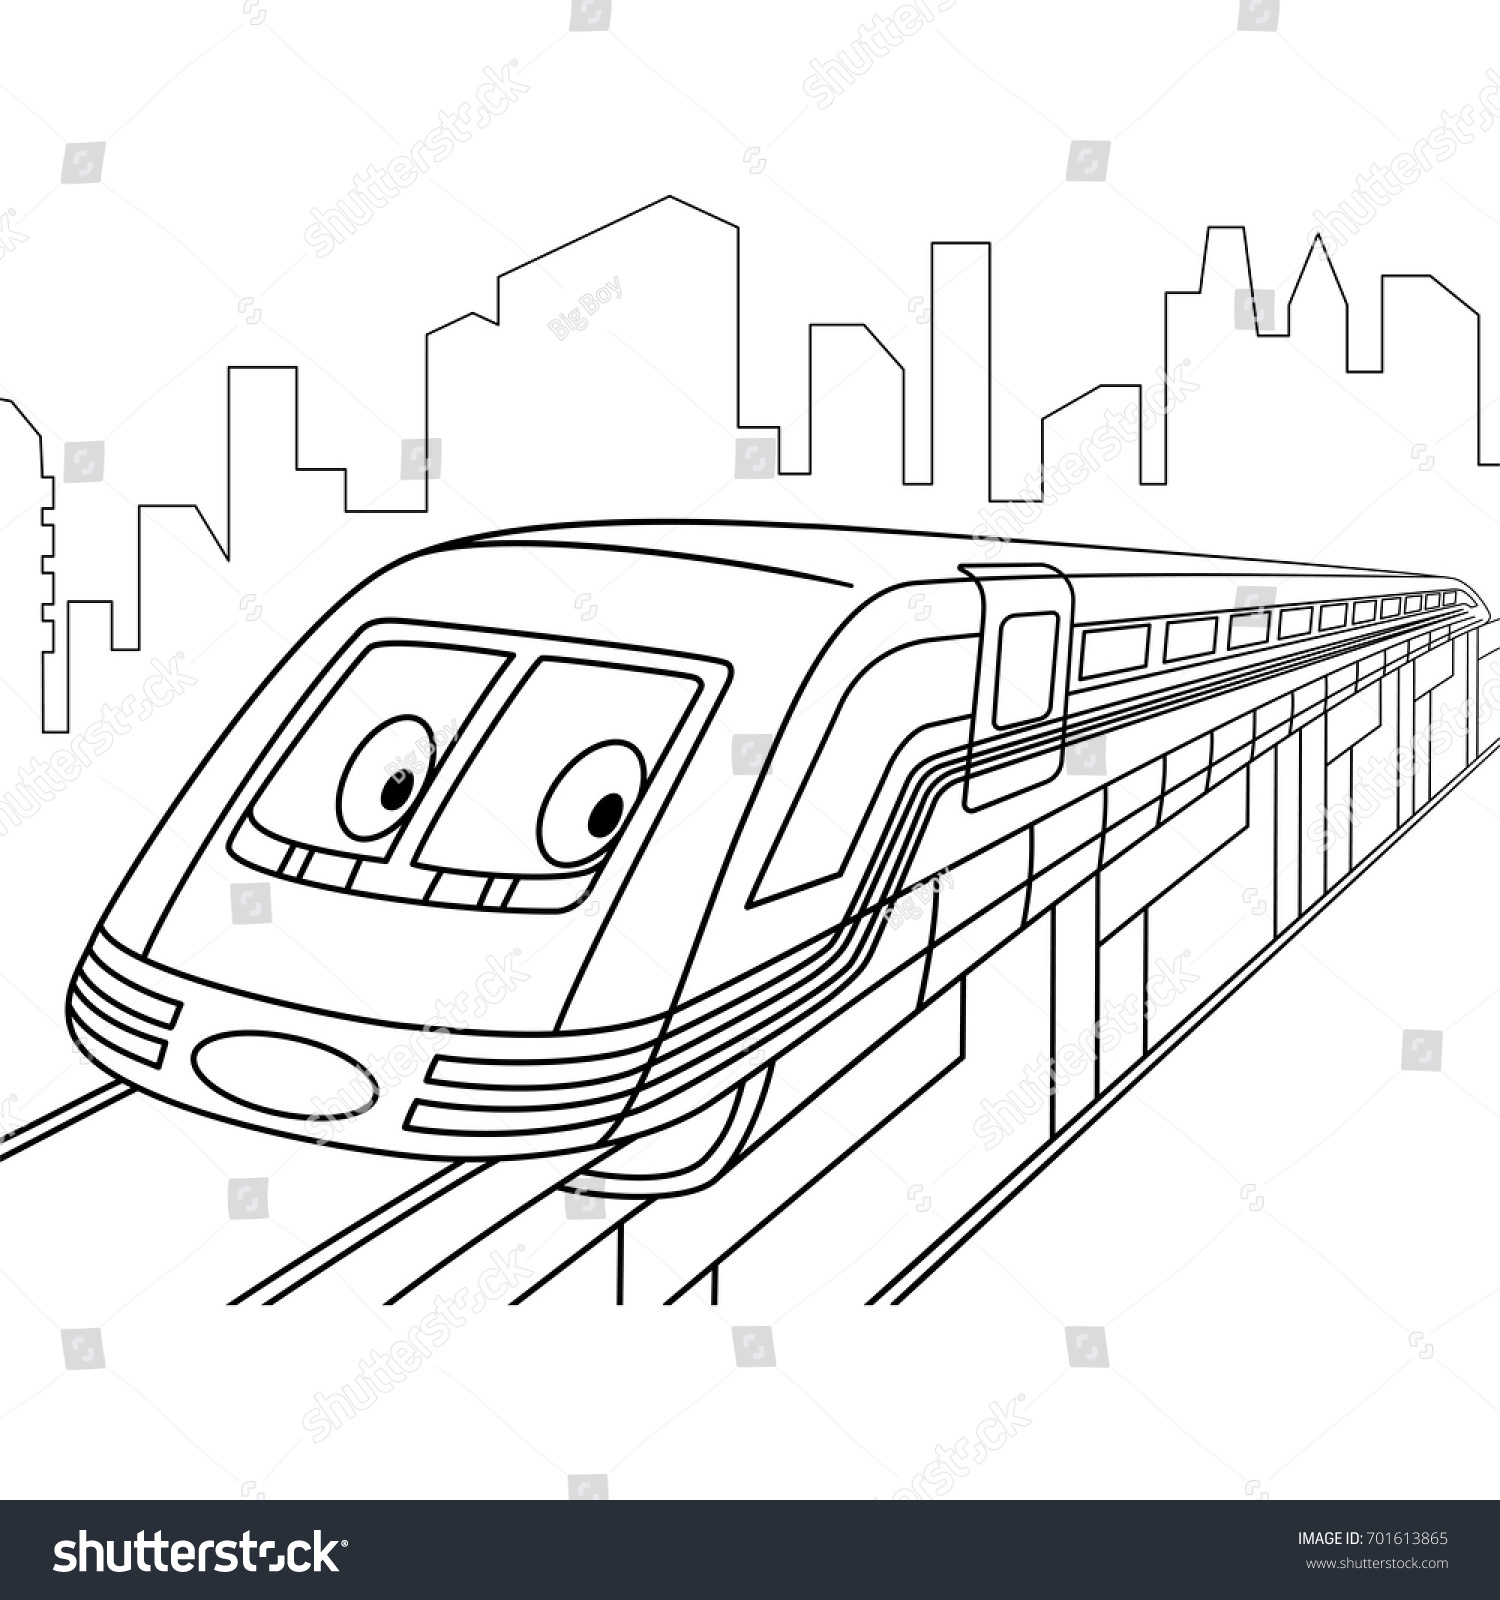 Coloring page high speed electric train åºåçéåïå ççï